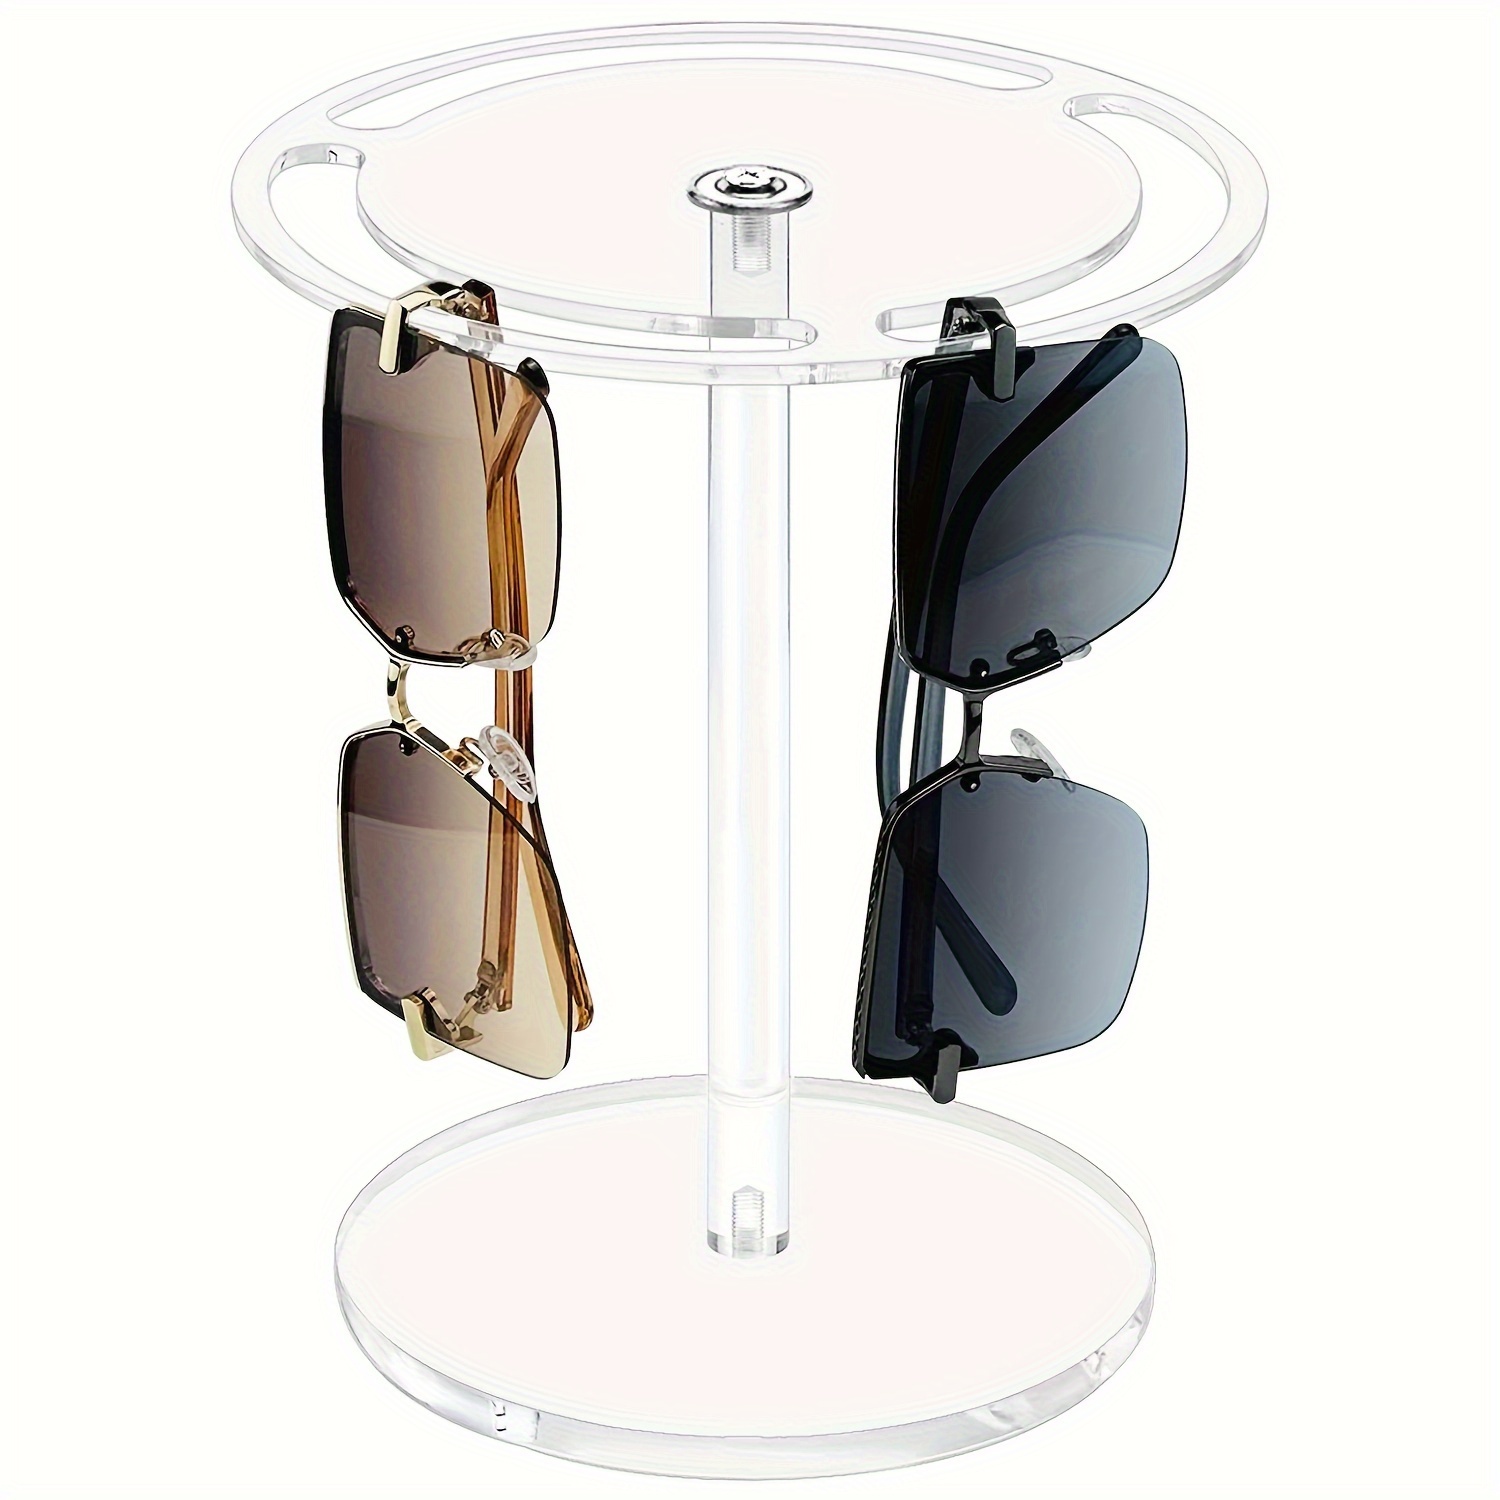 Organizador acrílico para lentes de sol, almacenamiento para lentes con 6  ranuras para múltiples lentes, paquete de 2, transparente